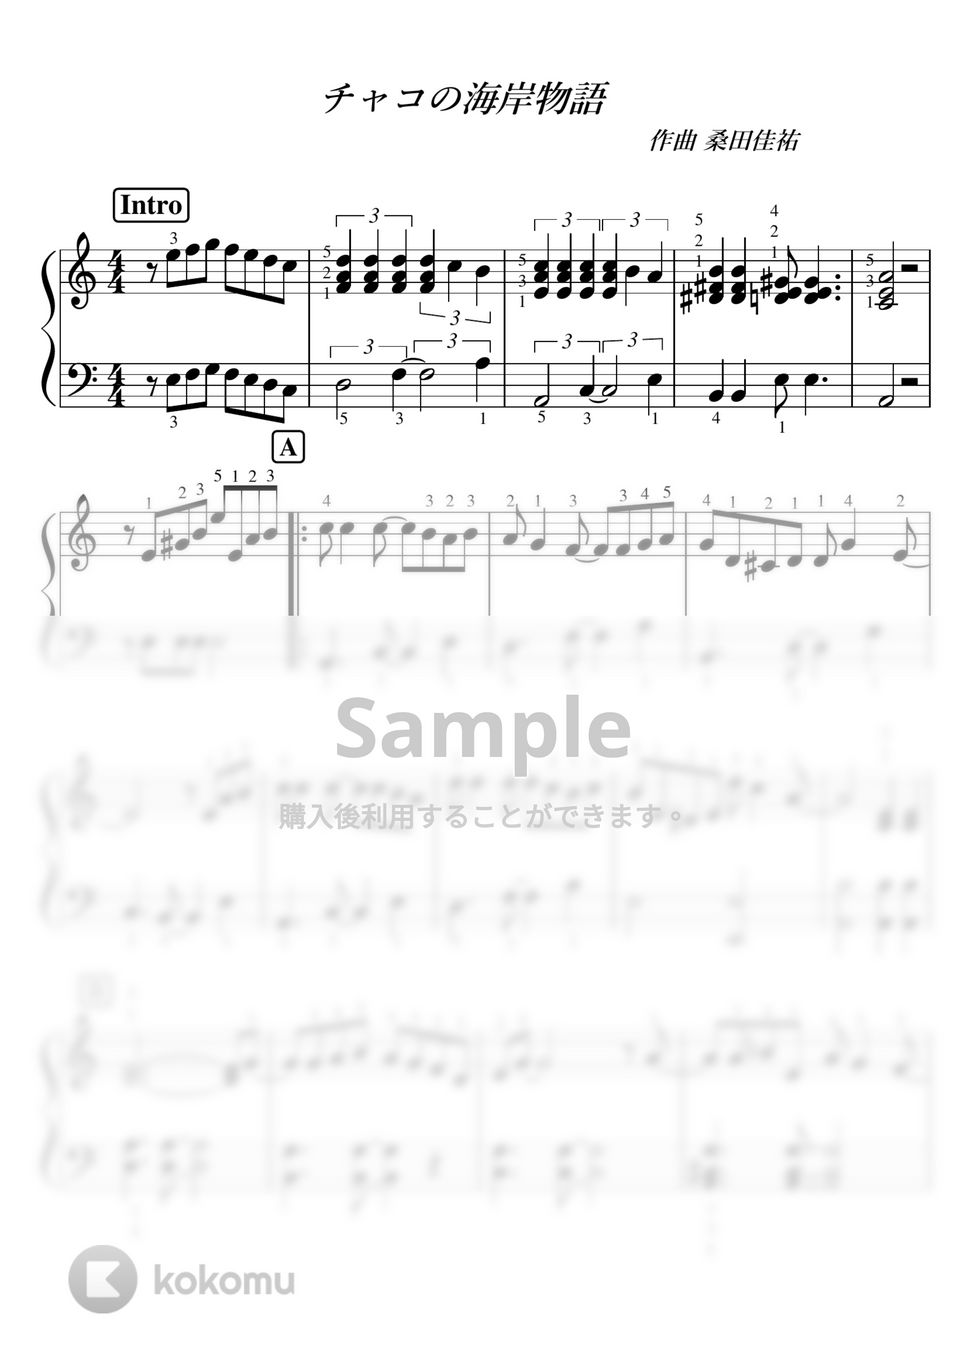 ポール・デ・セネヴァル - 【ピアノ初級】レディ・ディー（Lady Di） (リチャードクレイダーマン) by ピアノのせんせいの楽譜集